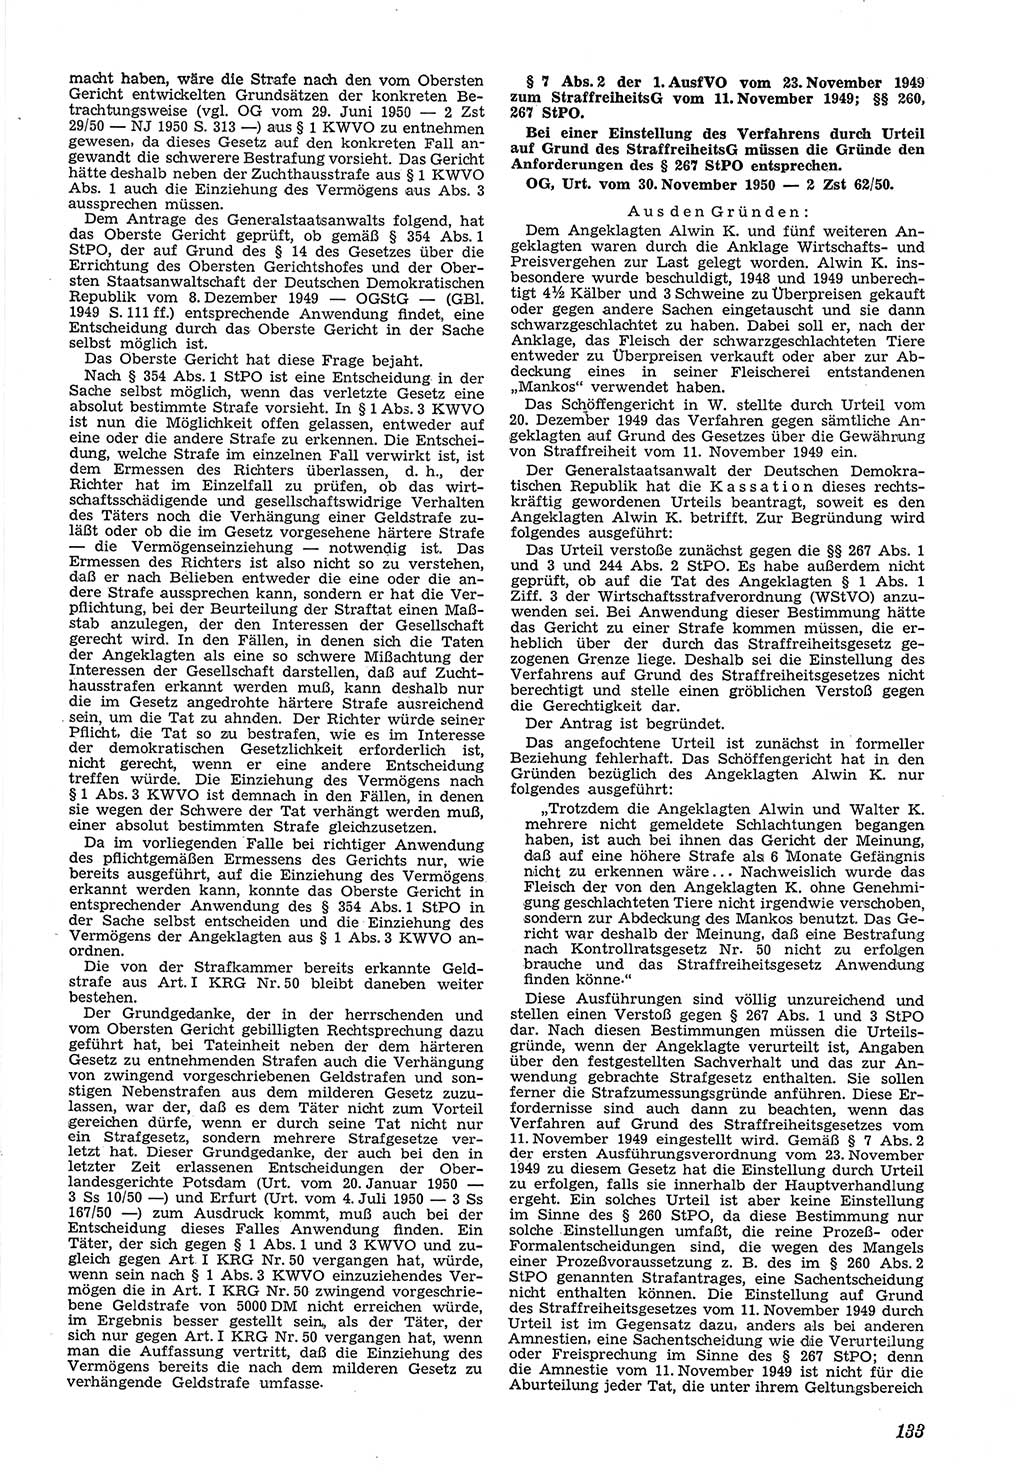 Neue Justiz (NJ), Zeitschrift für Recht und Rechtswissenschaft [Deutsche Demokratische Republik (DDR)], 5. Jahrgang 1951, Seite 133 (NJ DDR 1951, S. 133)